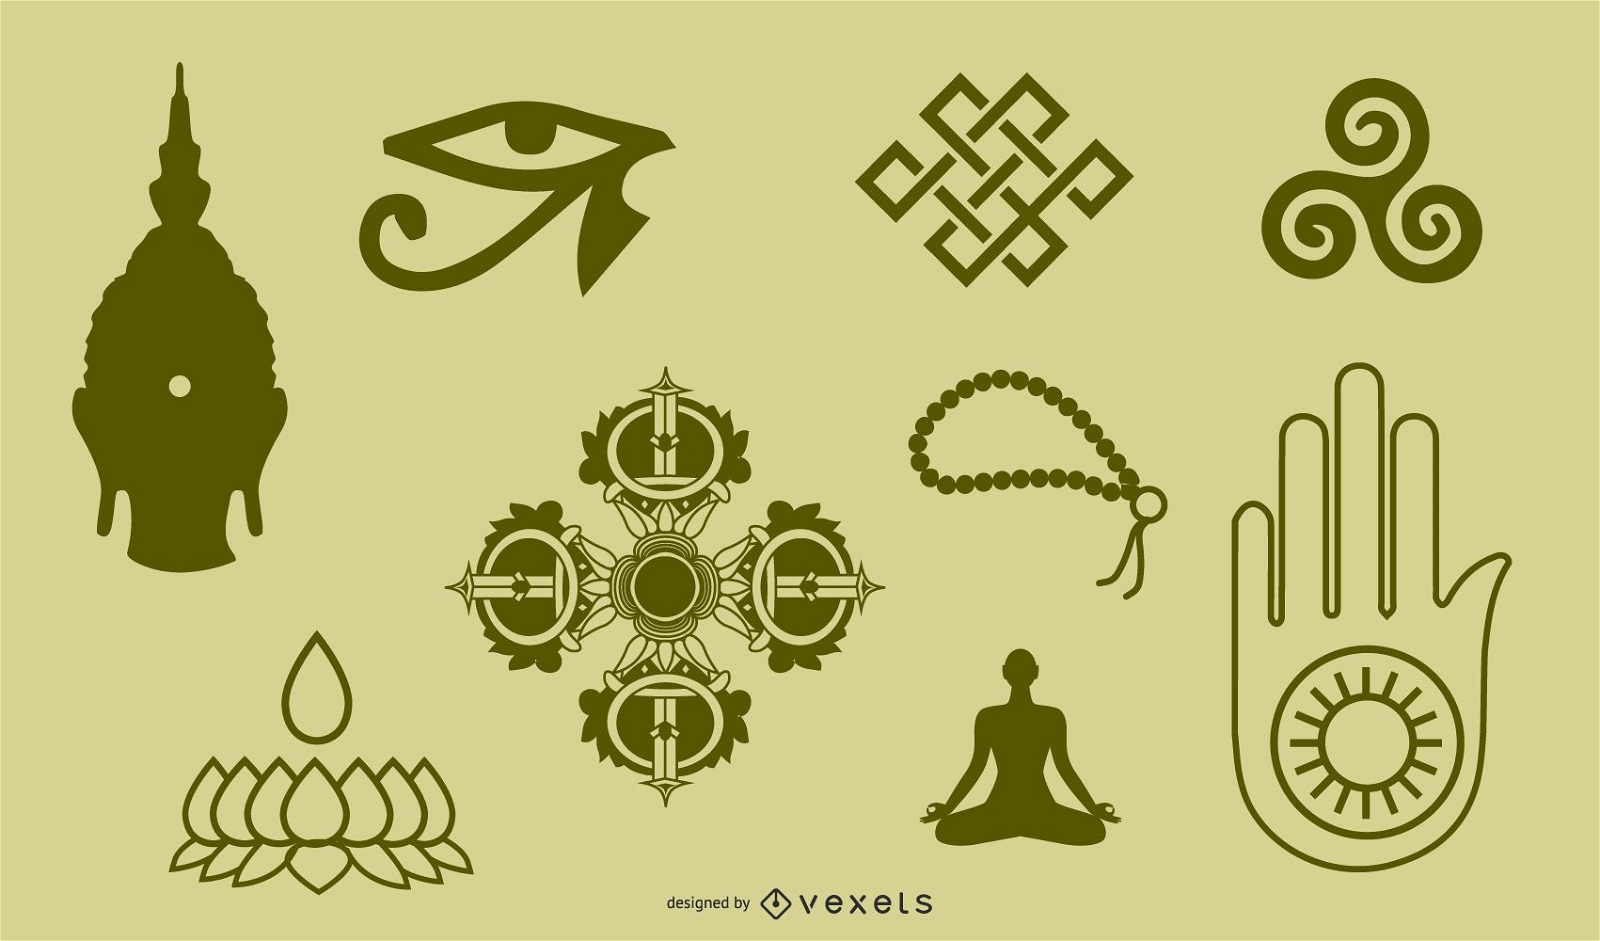 Tibetisch-buddhistische Symbole und Objekte Abbildung von zw?lf Handobjekten zur Identifizierung und Etikette Vektor